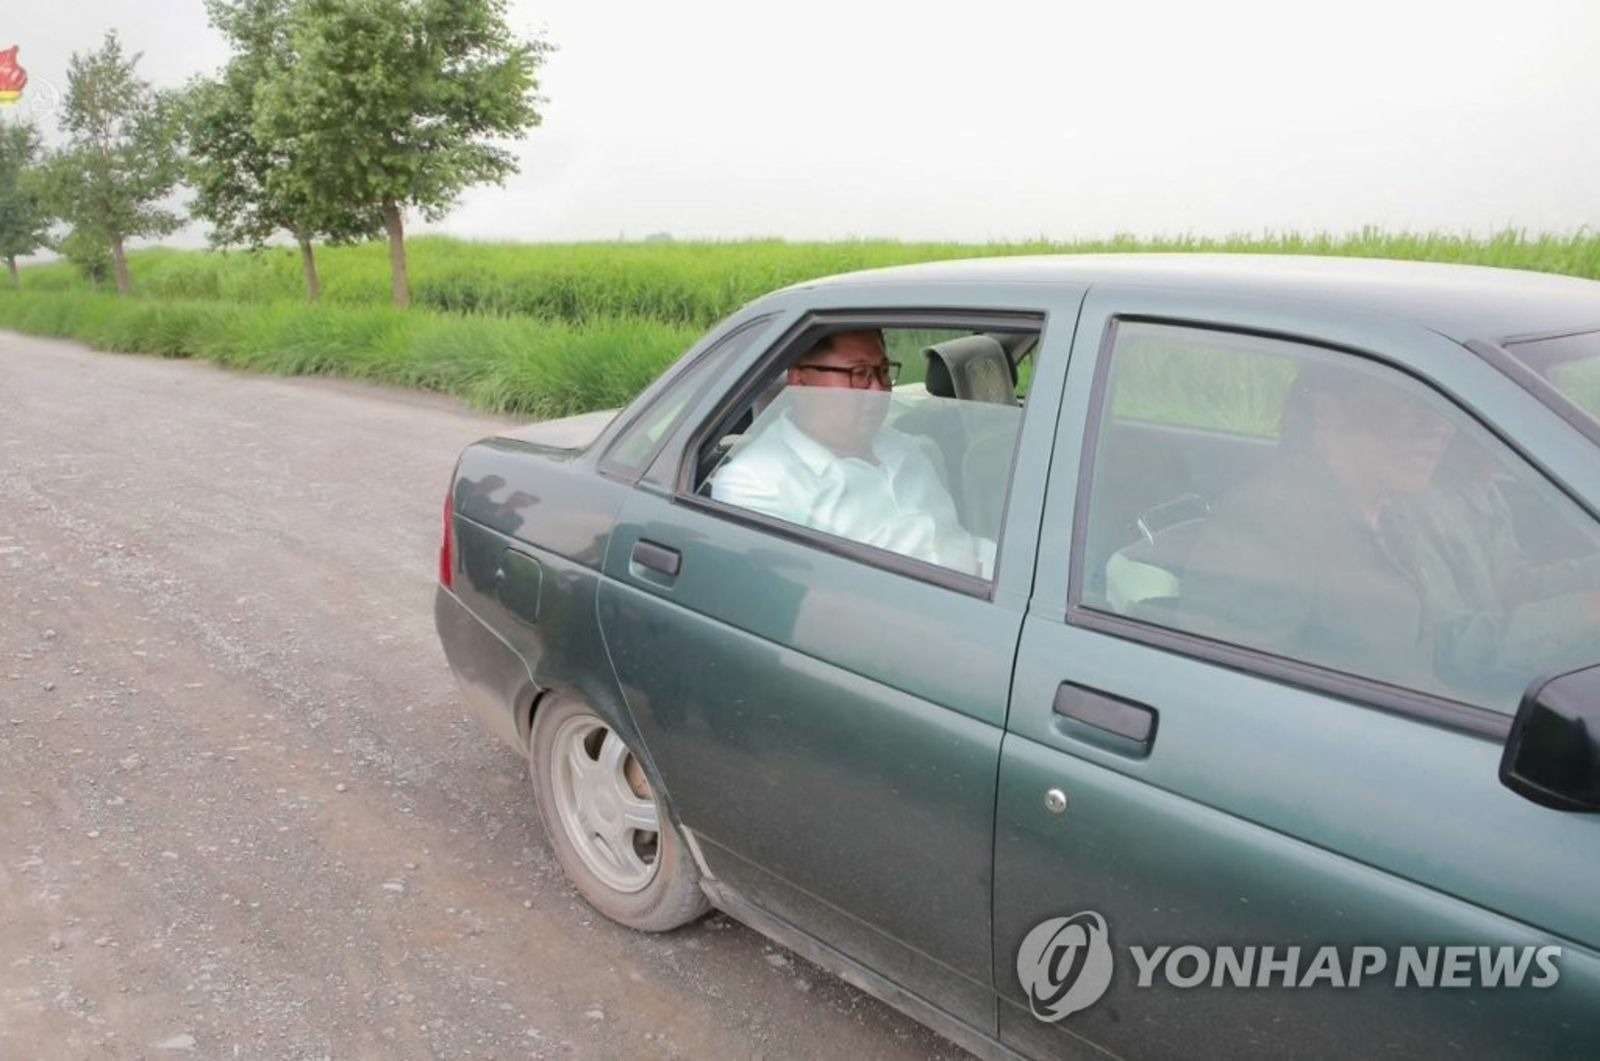 ...но для северокорейских СМИ Ким Чен Ын предпочитает фотографироваться в демократичных автомобилях. Например, в этой потрепанной Ладе Приоре.